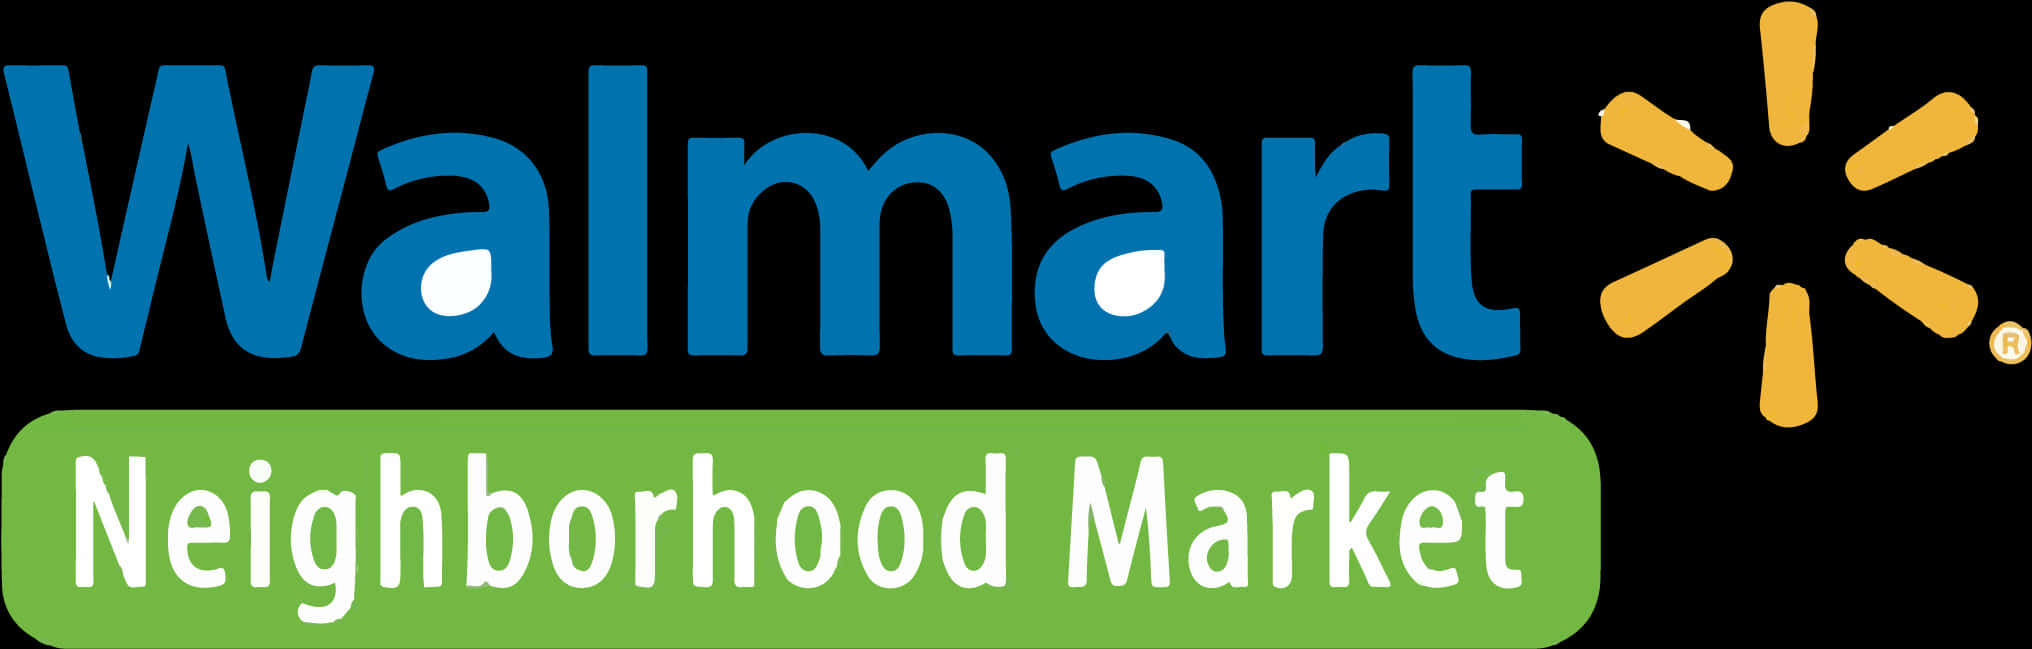 Walmart Neighborhood Market Logo PNG